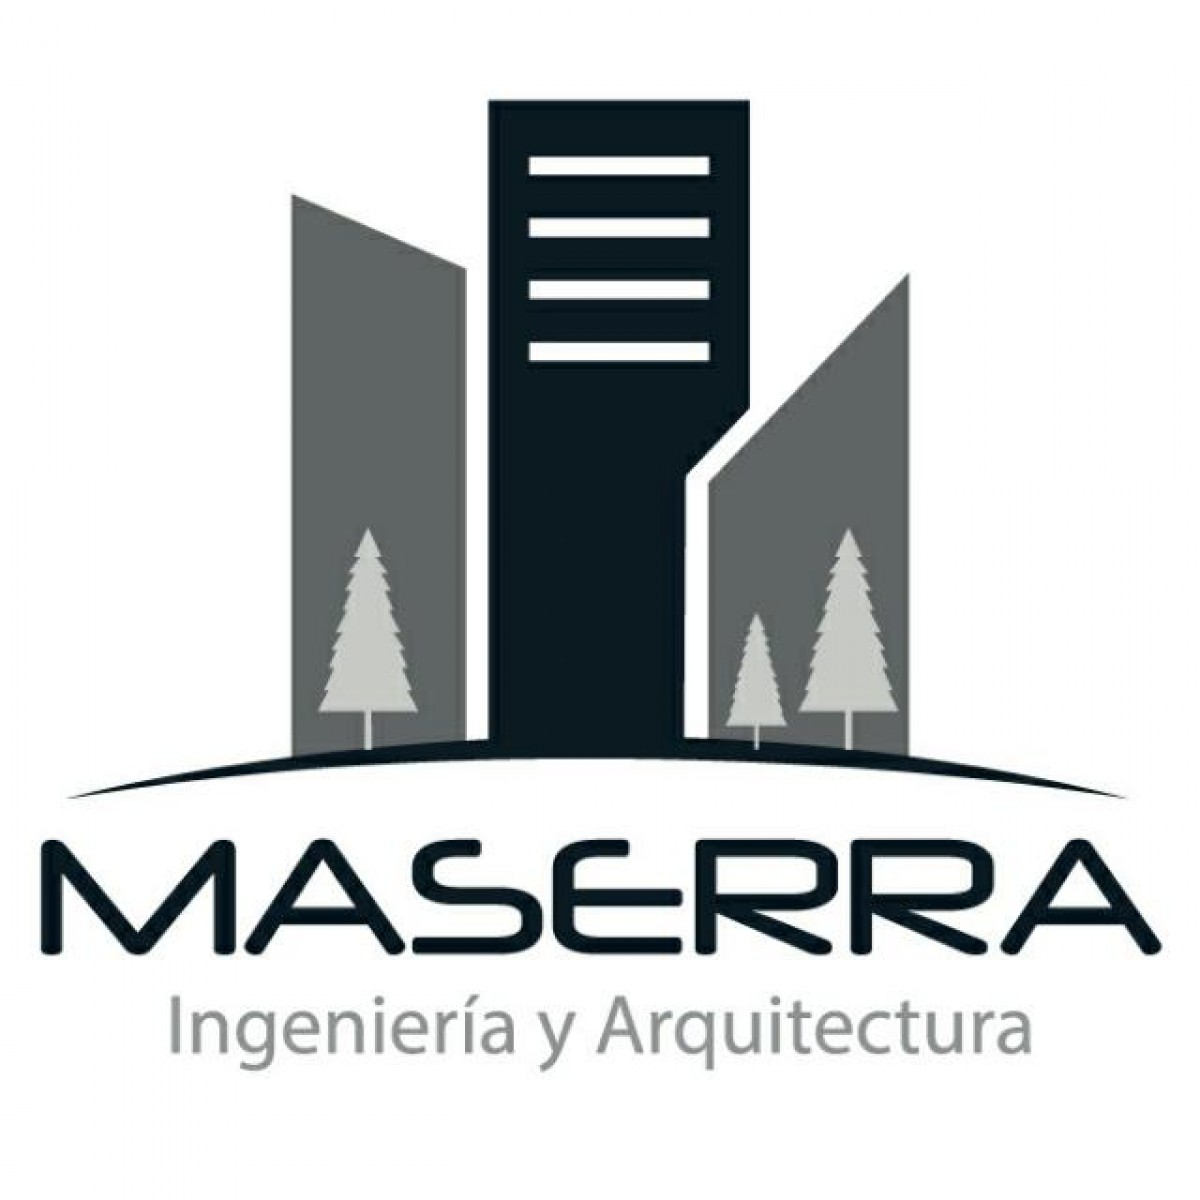 MASERRA INGENIERIA Y ARQUITECTURA